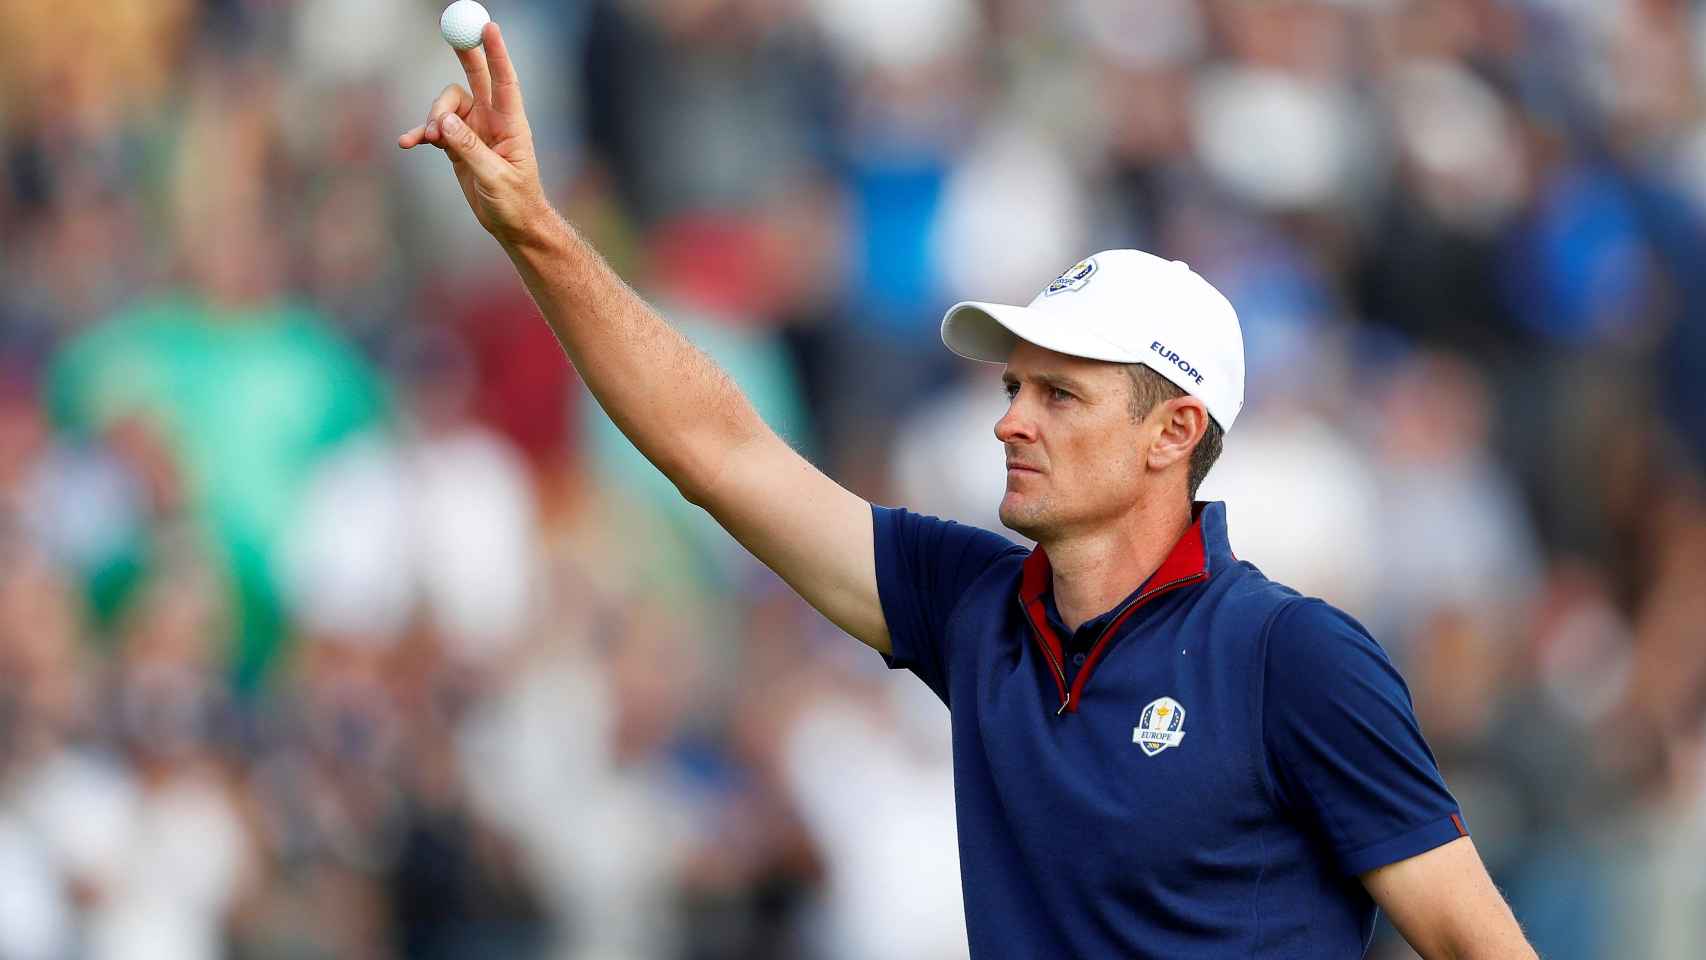 El golfista inglés del equipo europeo, Justin Rose, saluda al finalizar el noveno hoyo, durante la Ryder Cup 2018